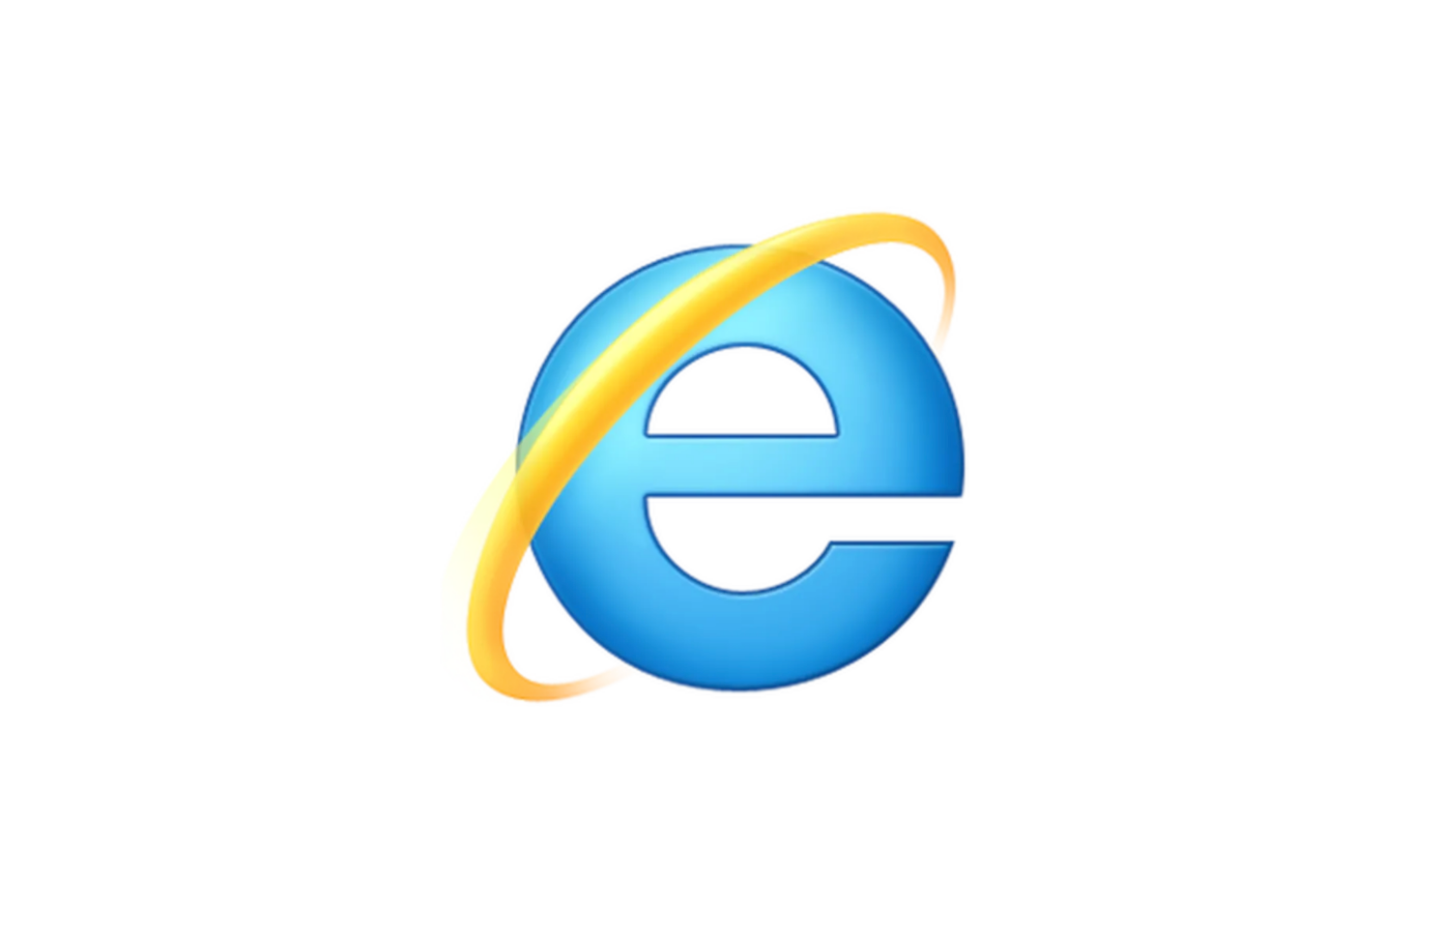 再見了 IE 瀏覽器！微軟將於 2022 年 6 月正式終止服務，全面改由 Edge 瀏覽器取代